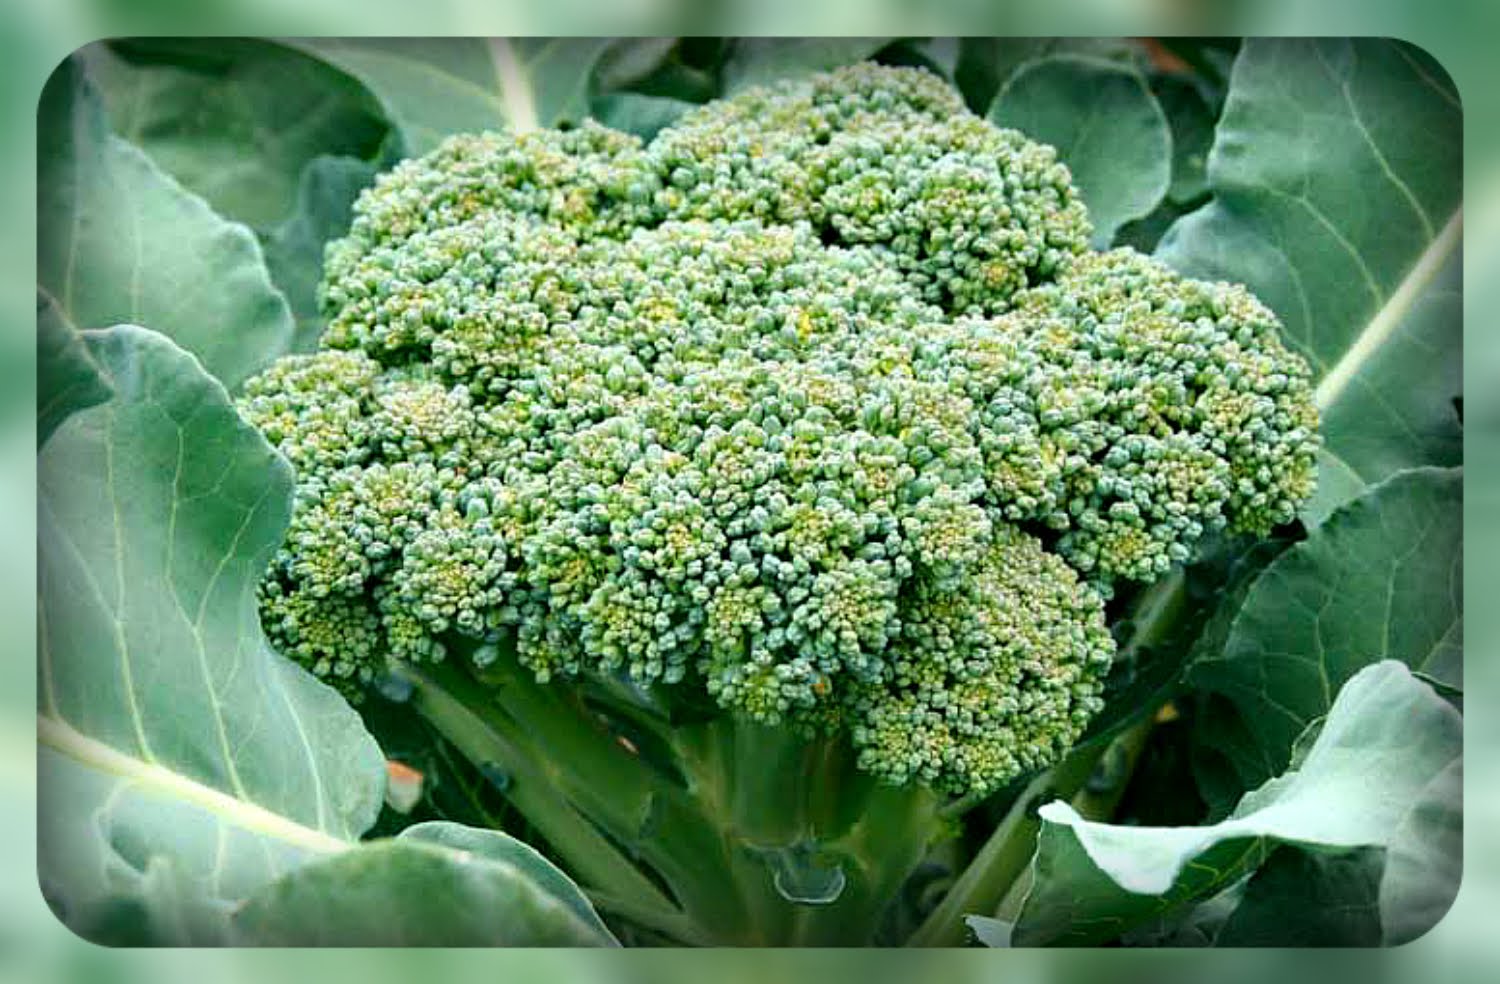 Cap de broccoli